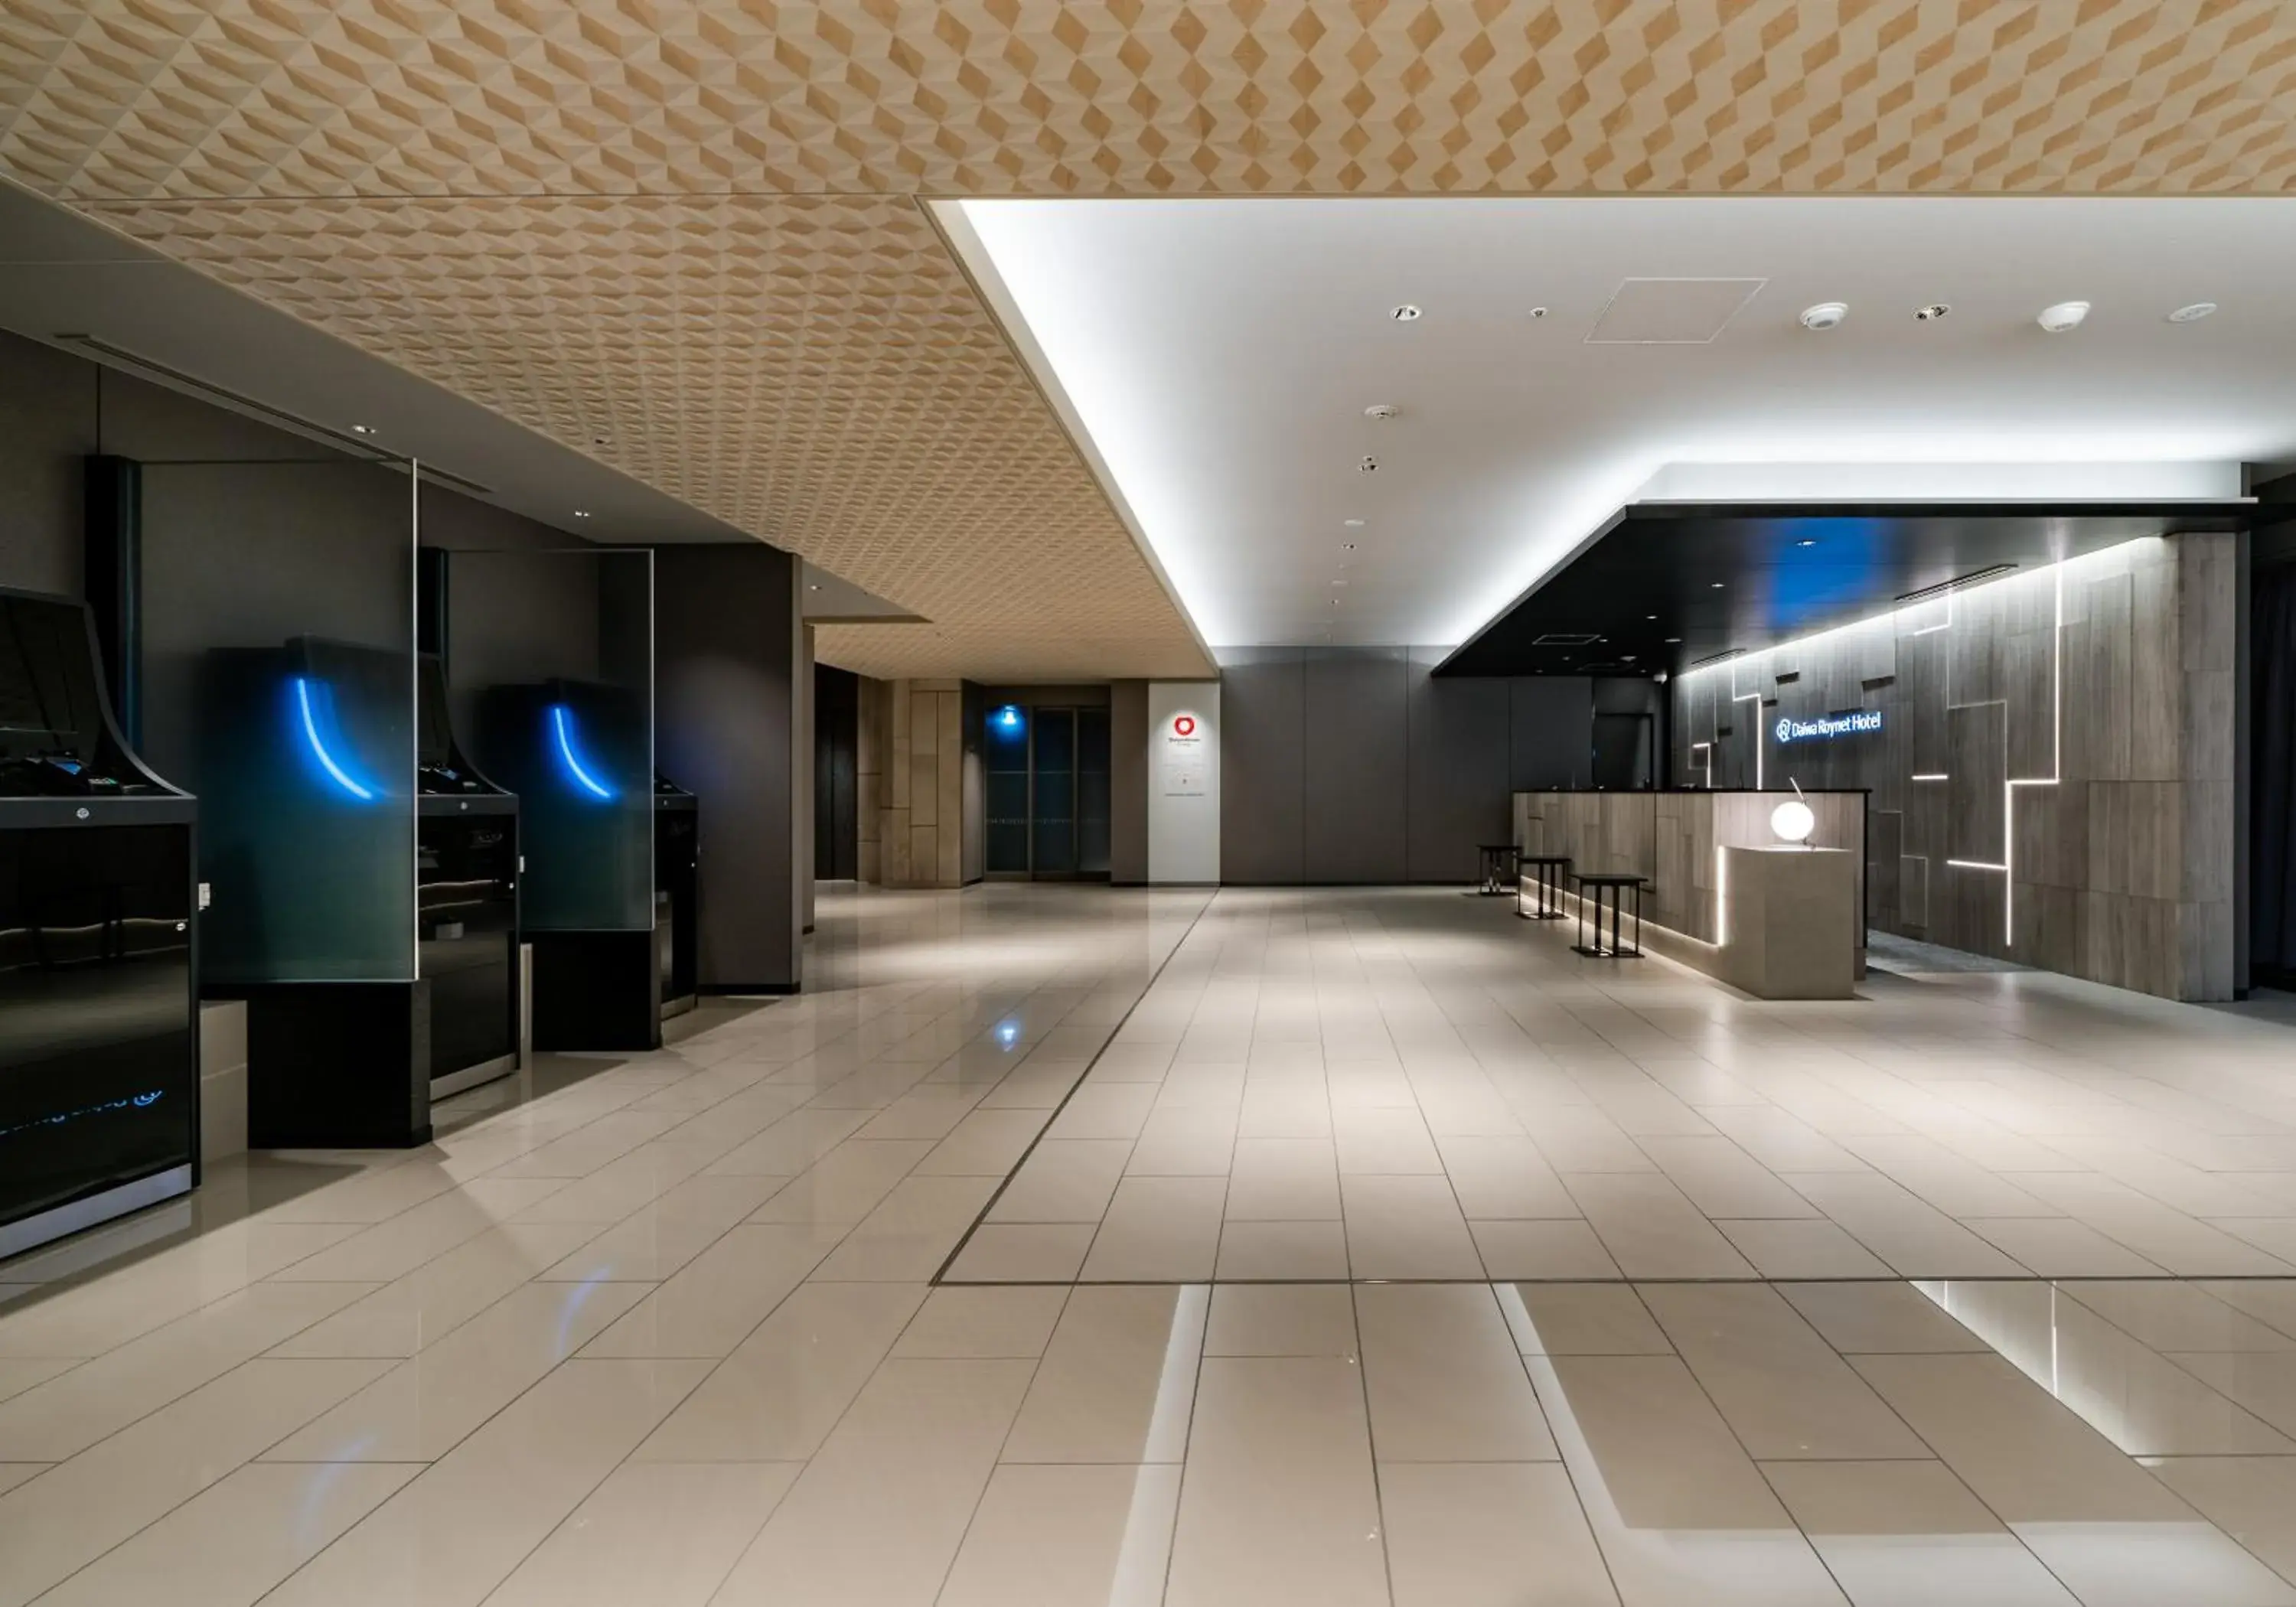 Lobby or reception, Lobby/Reception in Daiwa Roynet Hotel Tokyo Kyobashi PREMIER